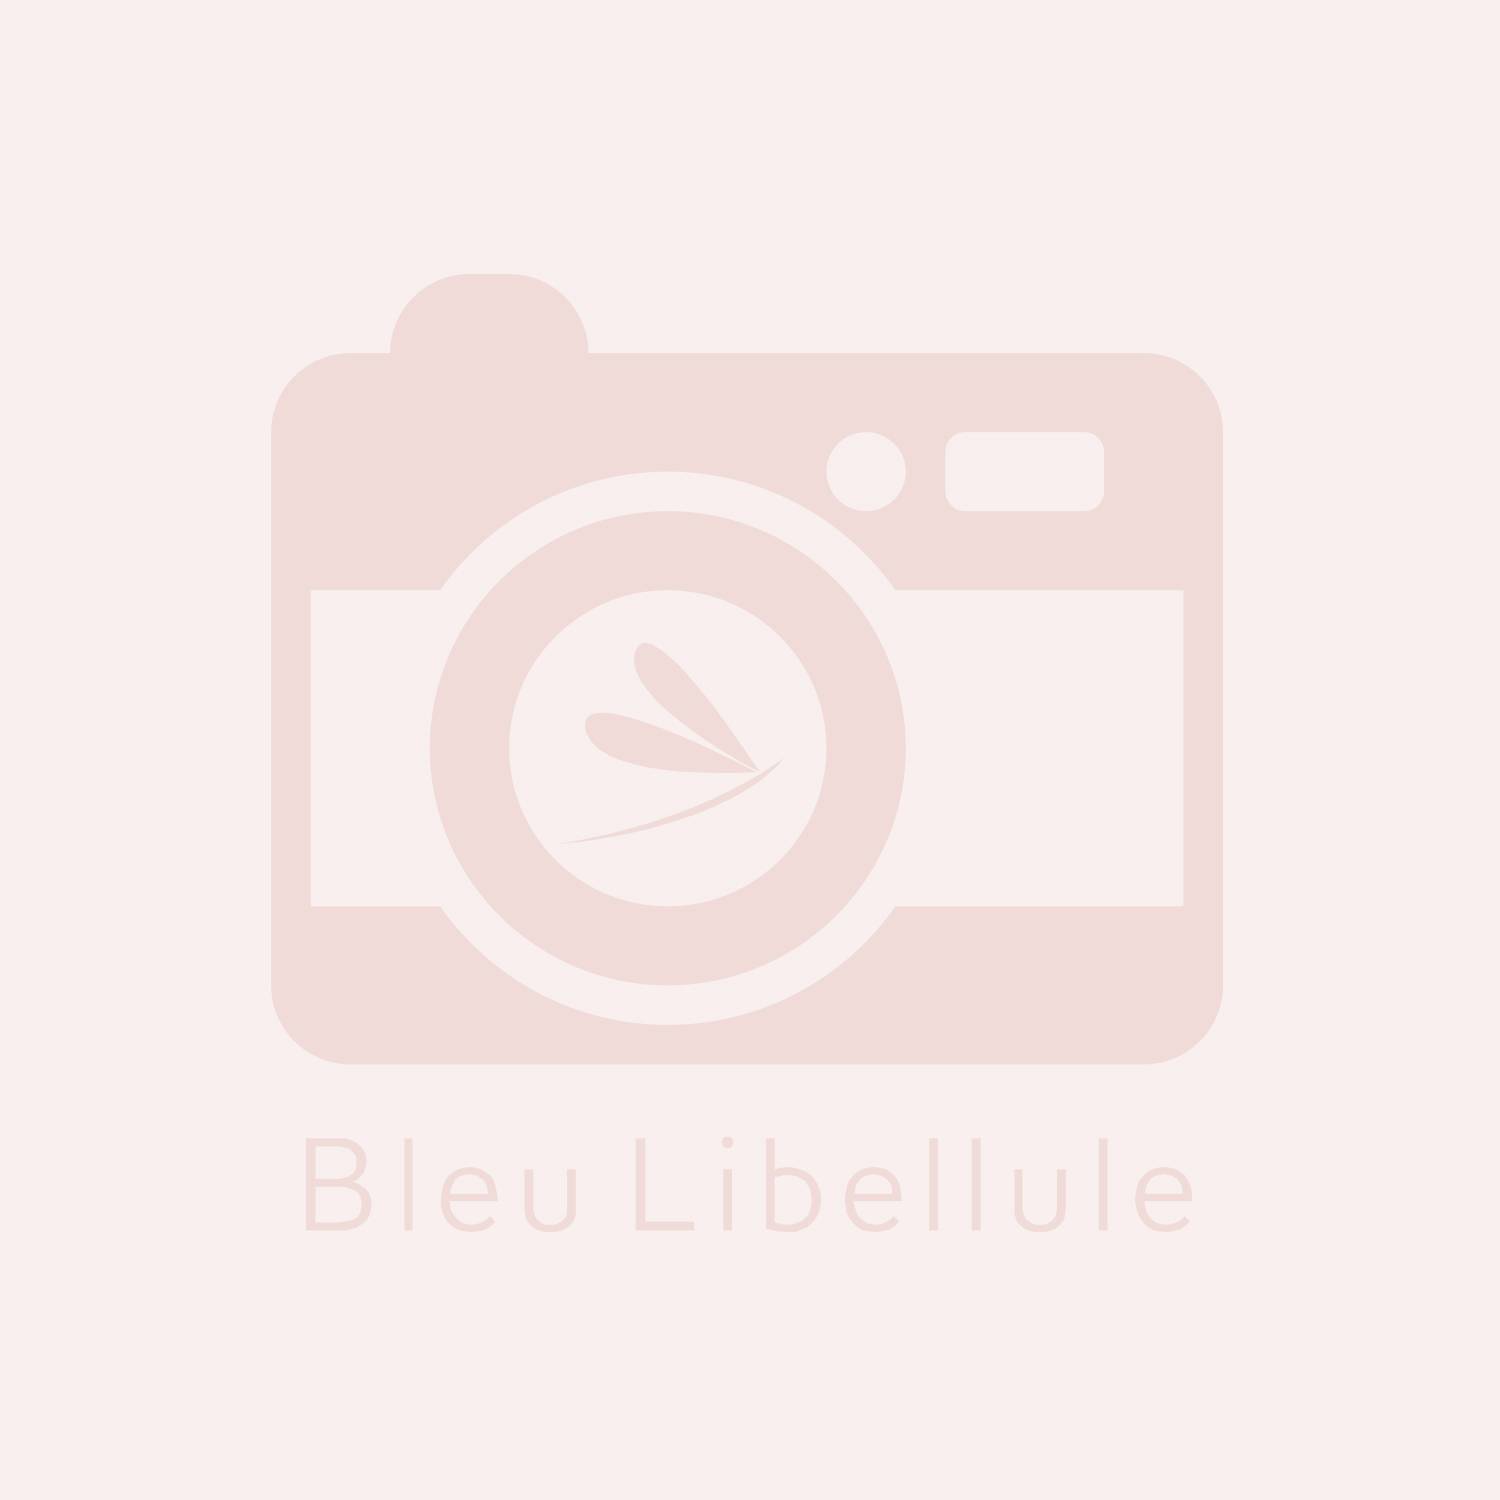 Bleu Libellule Grand pochon transparent Bleu Libellule 17 x 35cm , Bagagerie